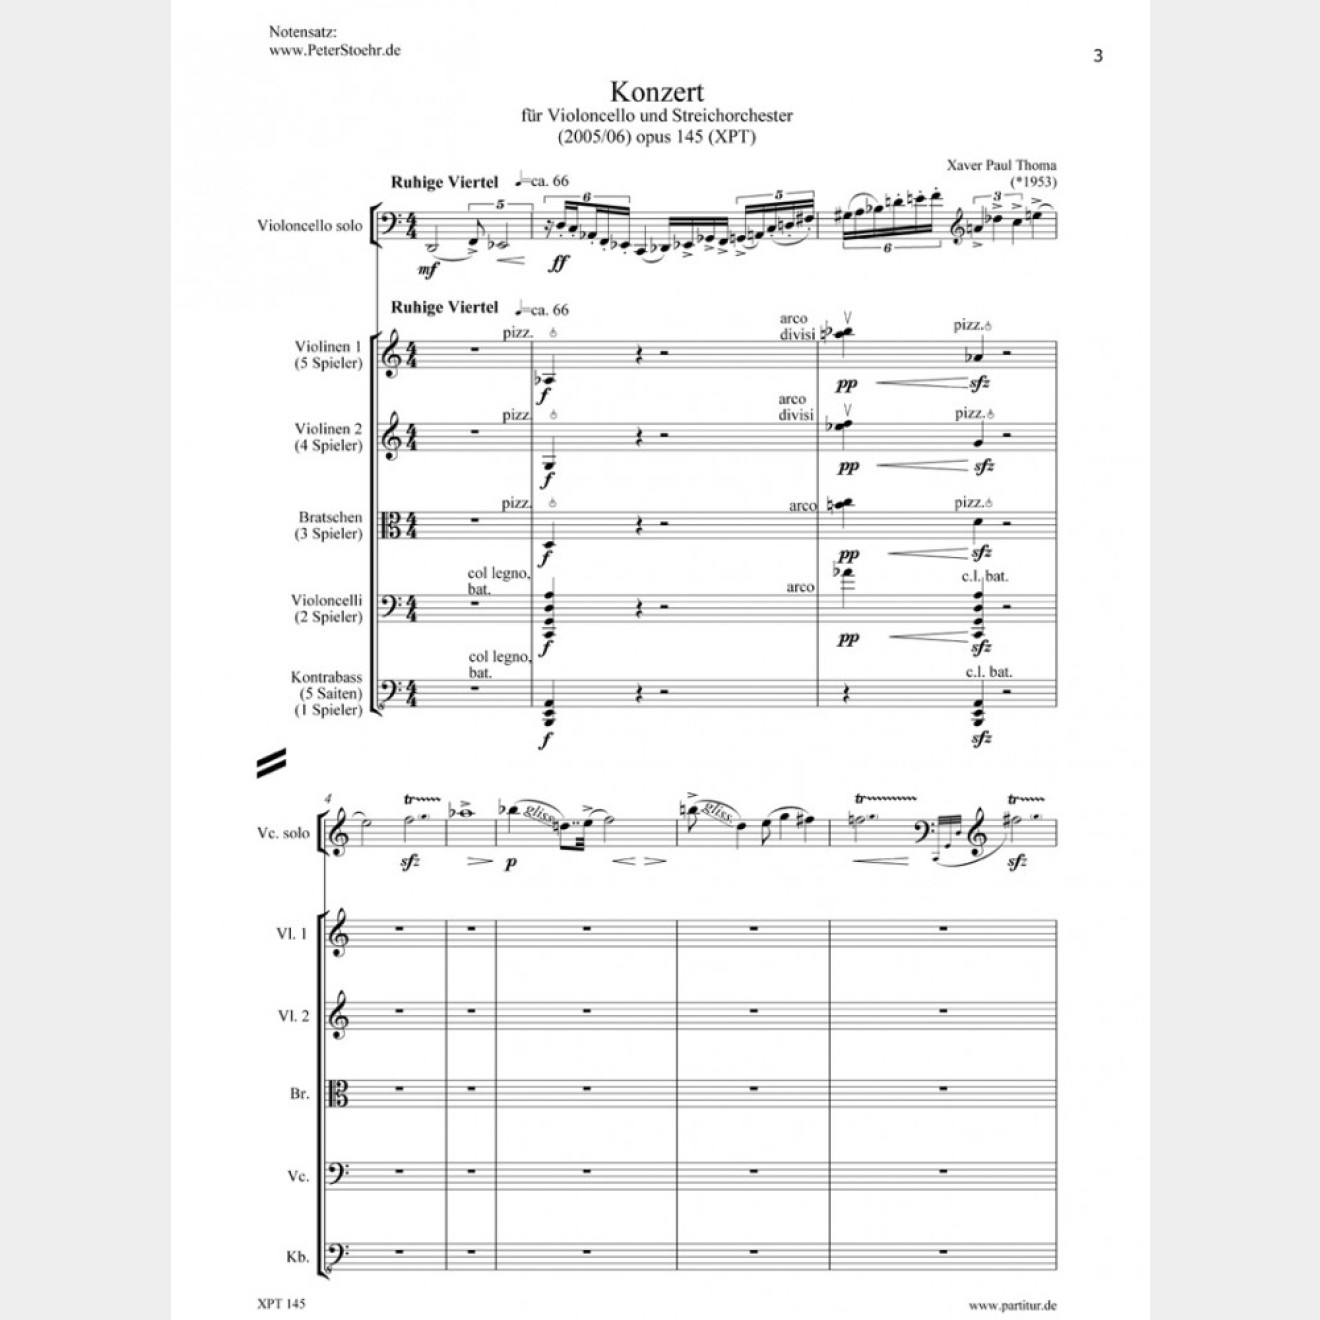 Konzert für Violoncello und Streichorchester, 24`